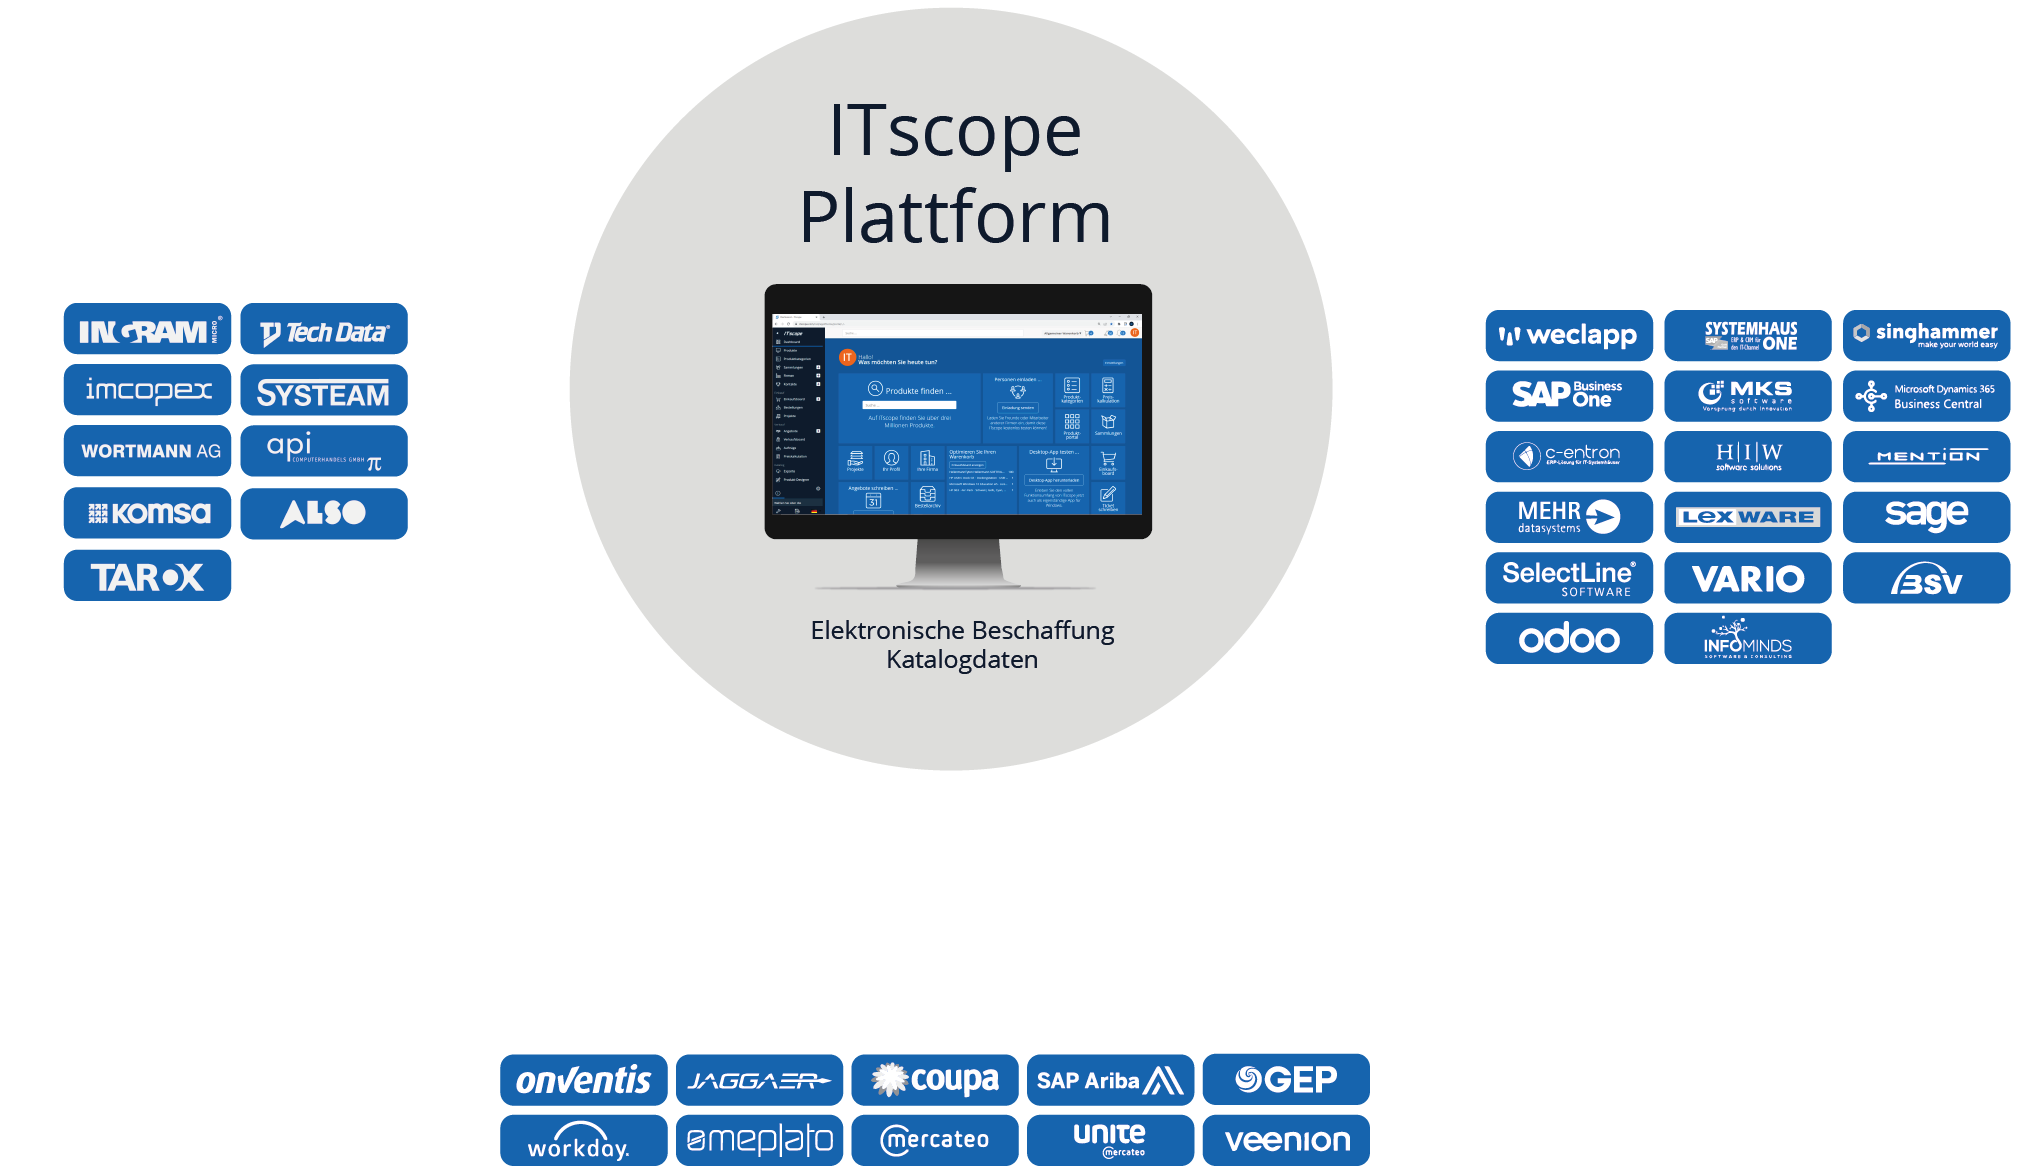 ITscope Plattform: Elektronische Beschaffung Katalogdaten. Fungiert als E-Procurement-System des Endkunden. EDI-Schnittstellen zu Distributoren, API-Schnittstellen zu ERP-Systemen der Systemhäuser. 